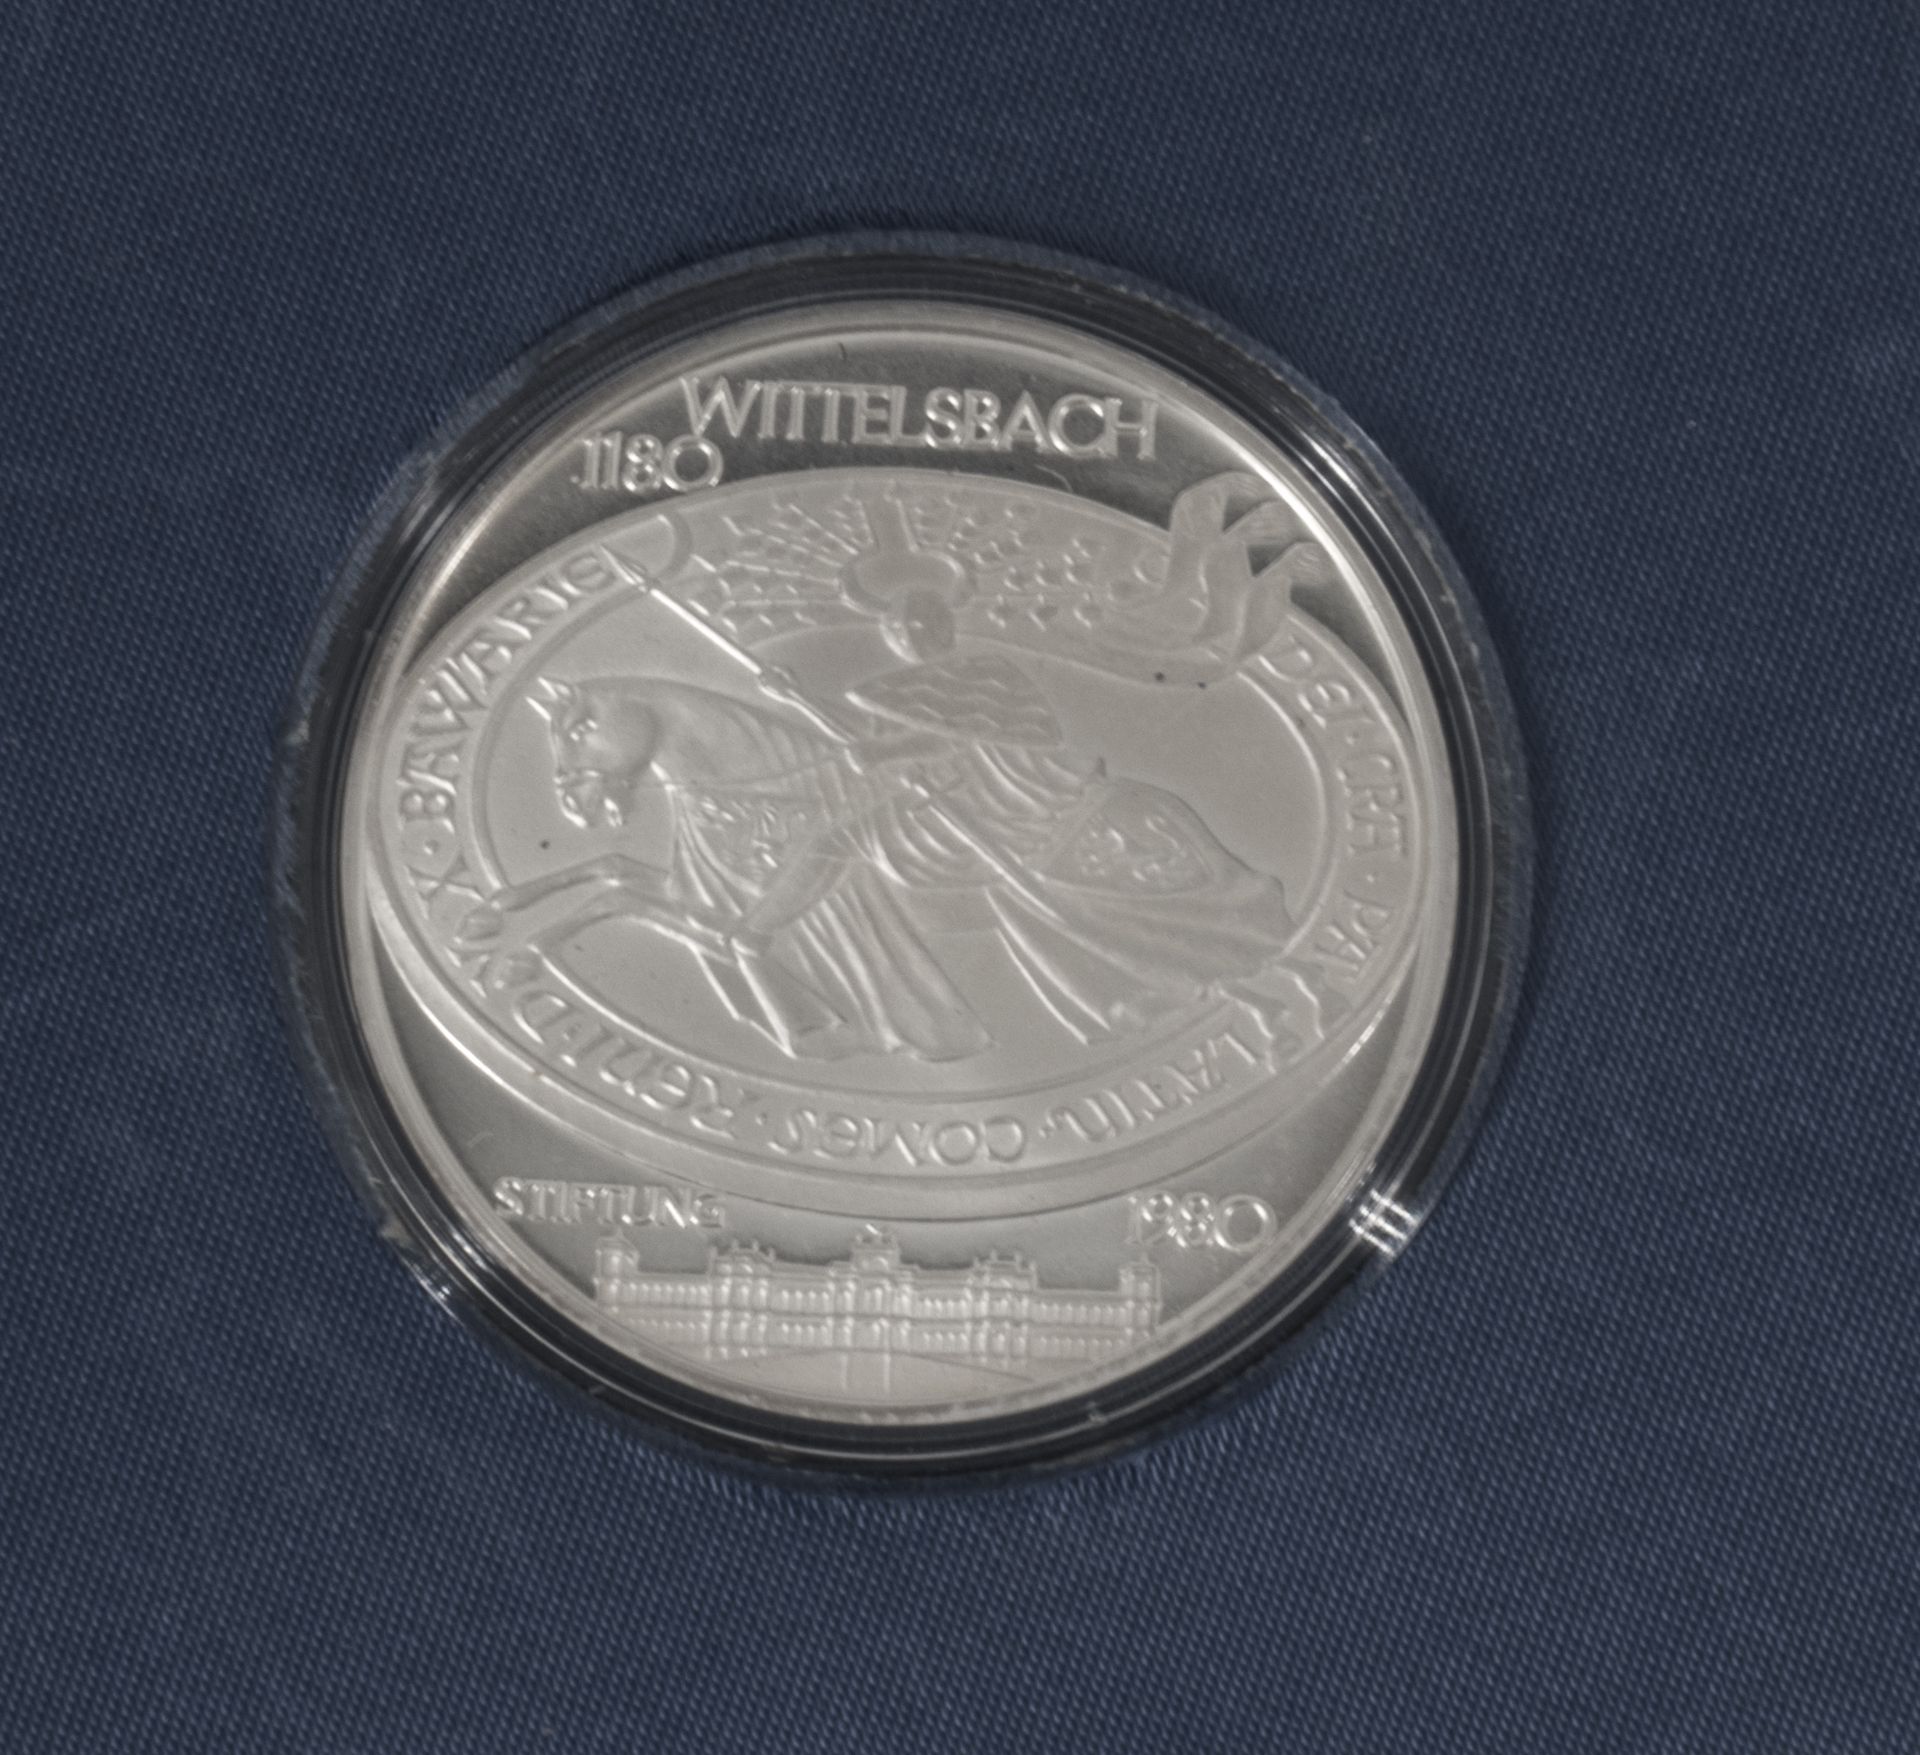 Bayern, Silbermedaille Wittelsbach Stiftung. Silber 1000, Gewicht: ca. 40 g, Durchmesser: ca. 45 mm. - Bild 2 aus 3